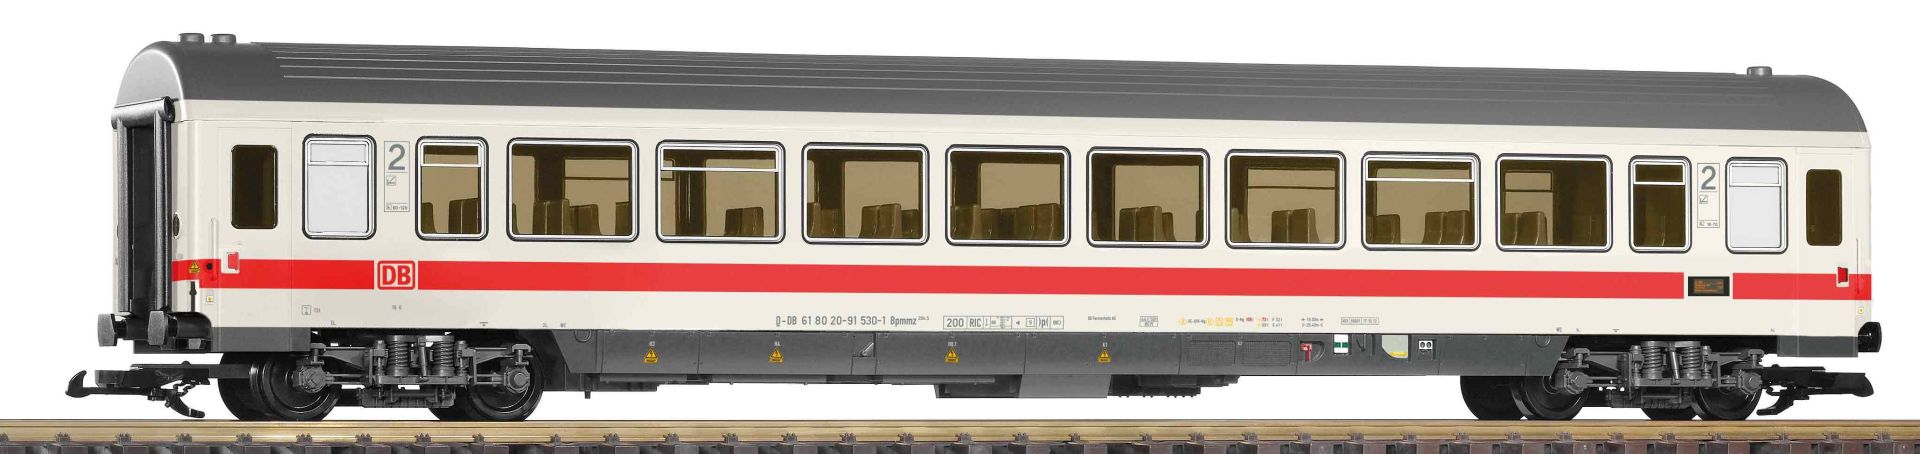 Piko 37671 - Personenwagen IC, 2. Klasse, DBAG, Ep.VI